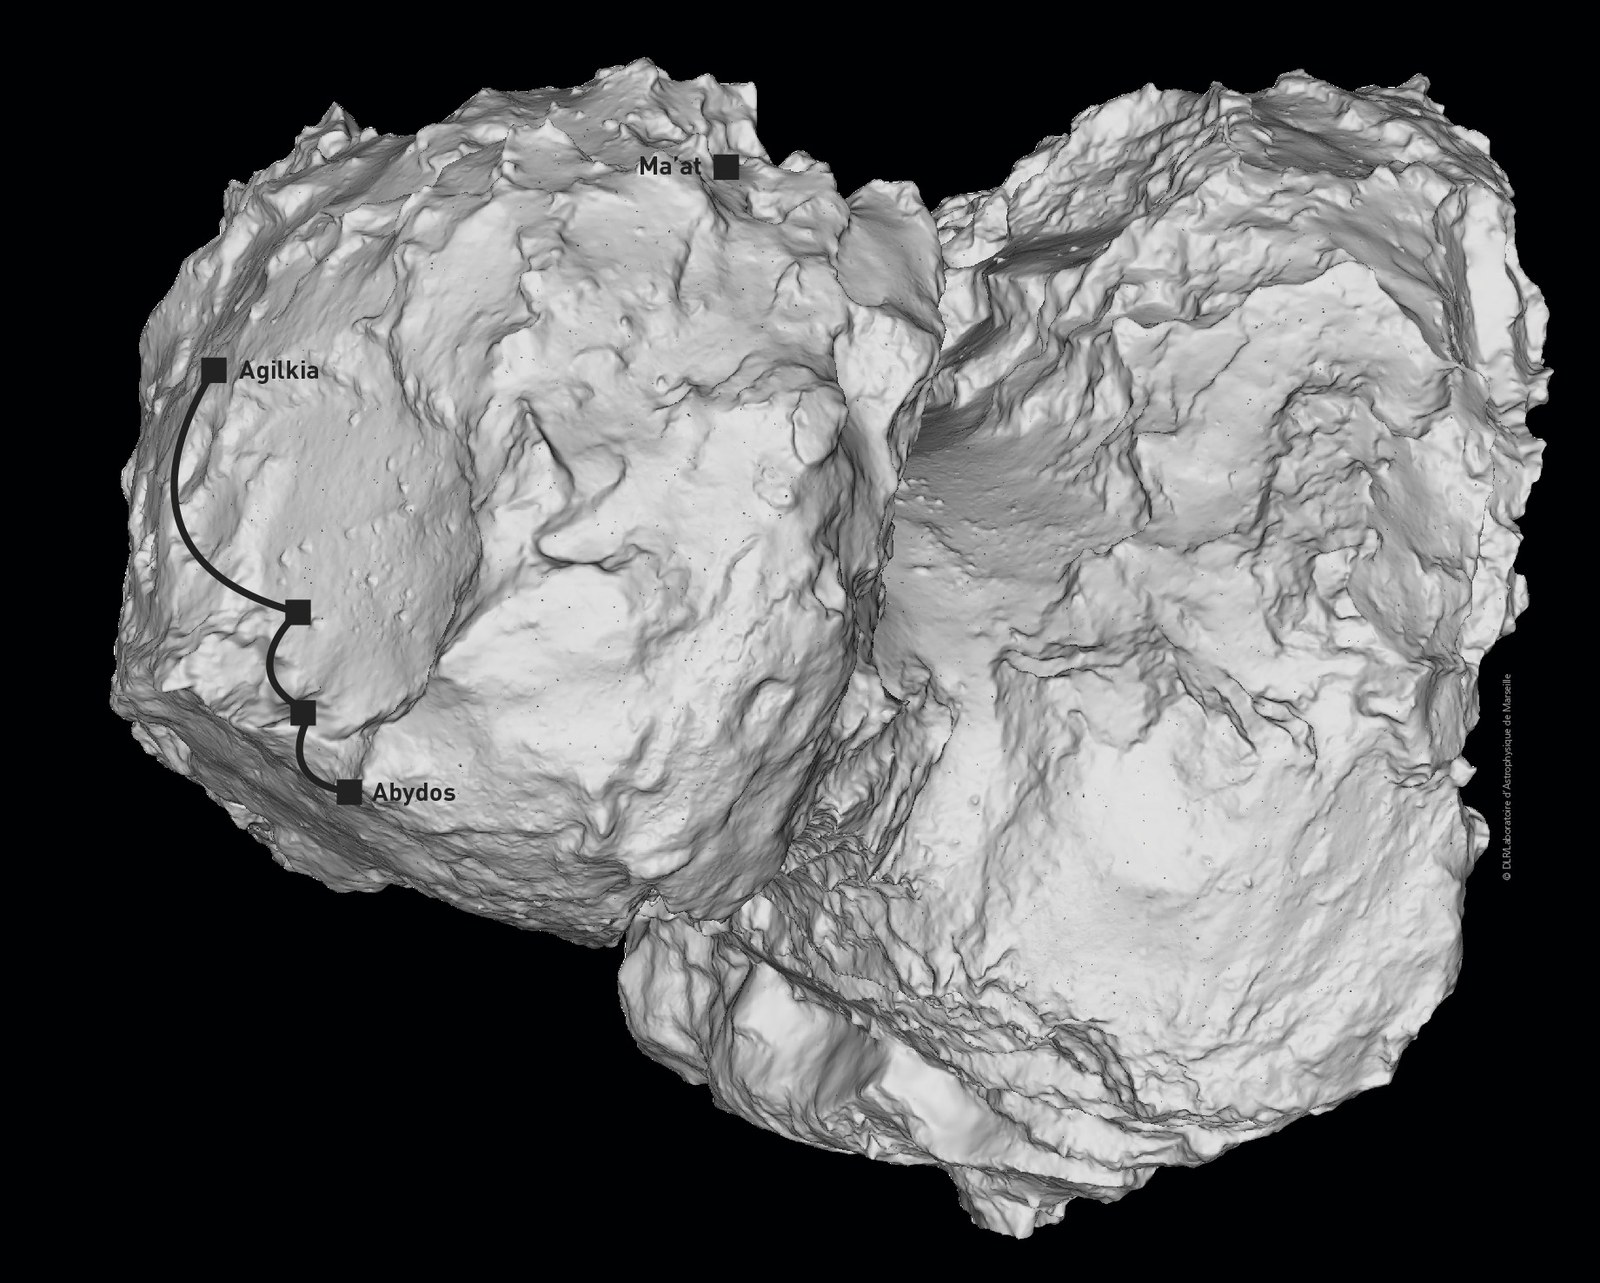 Zwölfeinhalb Jahre nach dem Start und nach einer mehr als sieben Milliarden Kilometer langen Reise endete am 30. September 2016 die Mission Rosetta